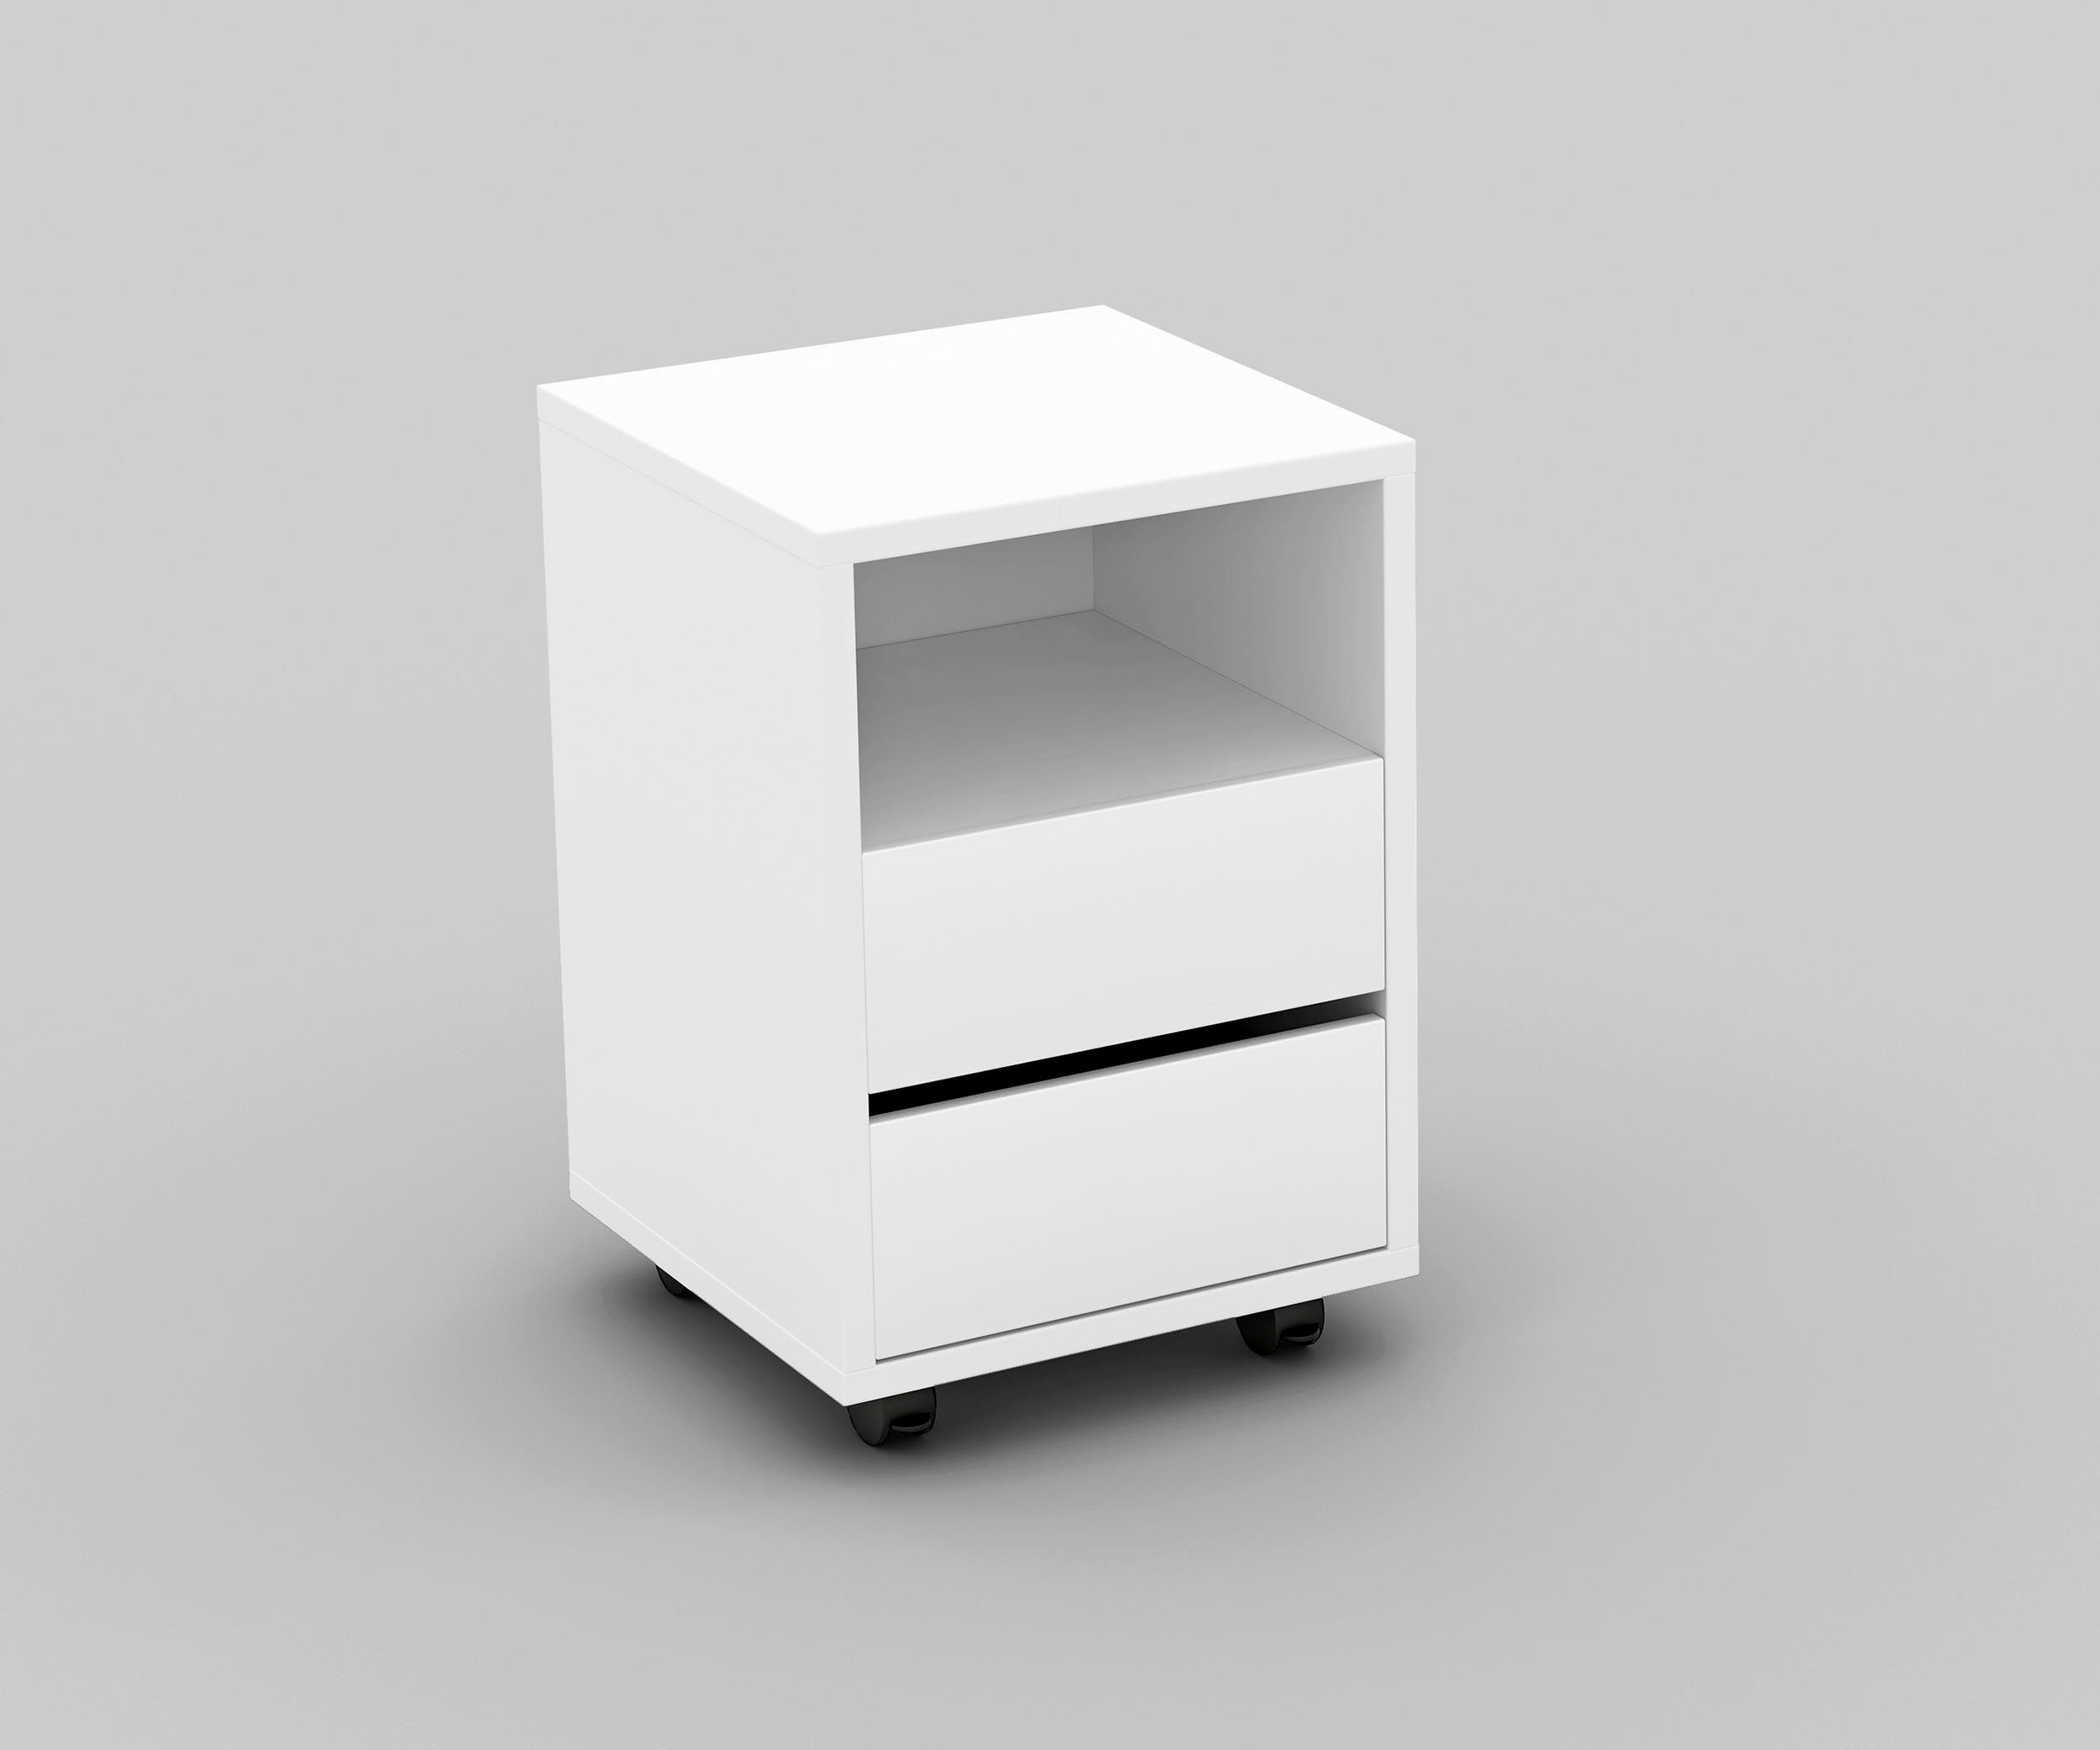 Helvetia Rollcontainer Agapi, Bürocontainer im modernen Design, 40x40x62 cm,  2 Schubkästen | Aktenschränke